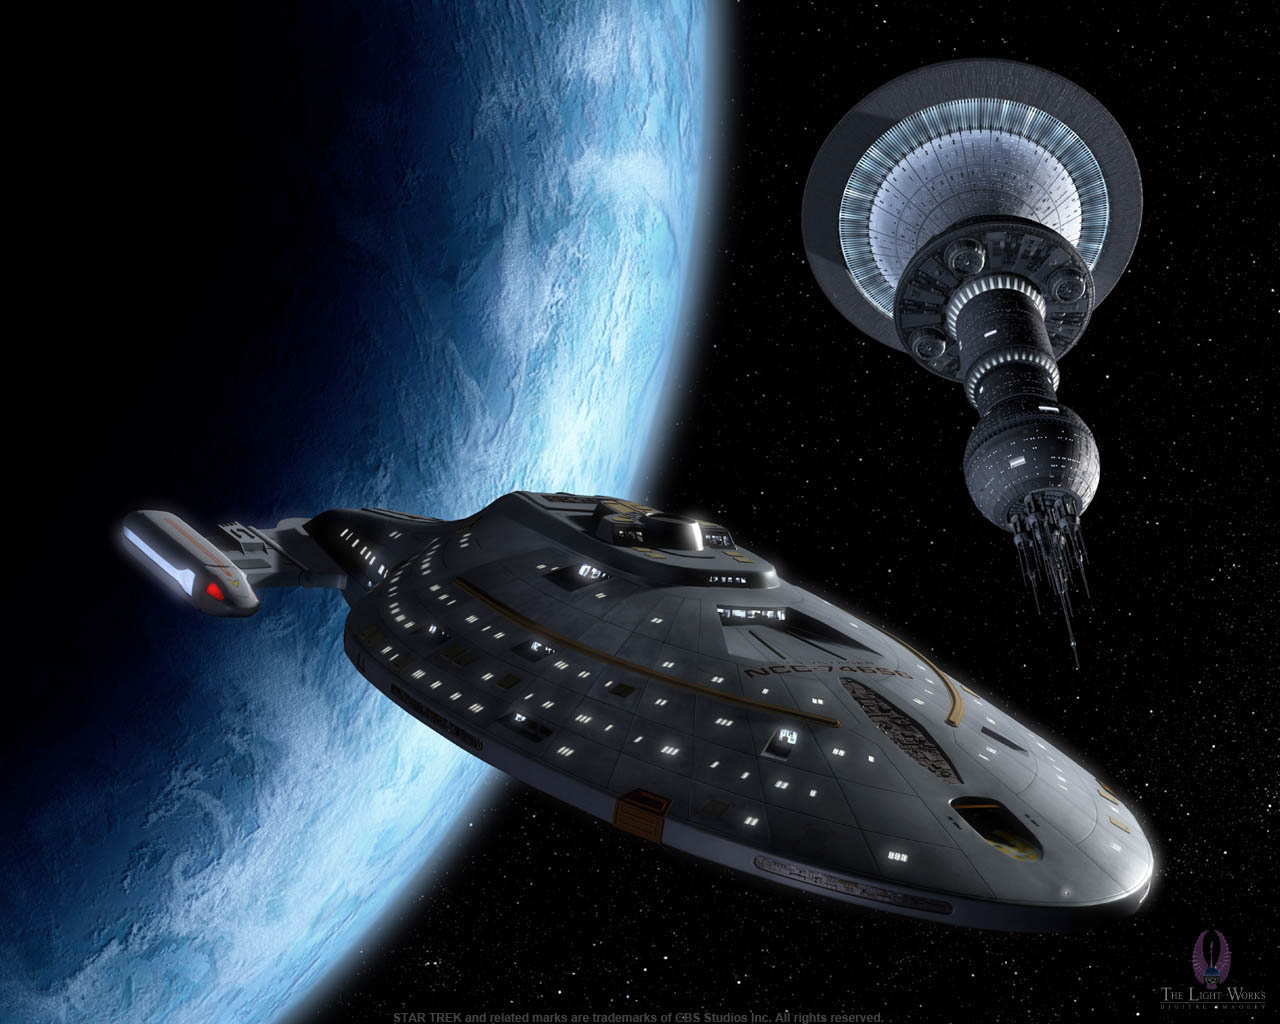 U.S.S. Voyager (Bild: Nutzung mit freundlicher Erlaubnis von The Light Works, Tobias Richter)